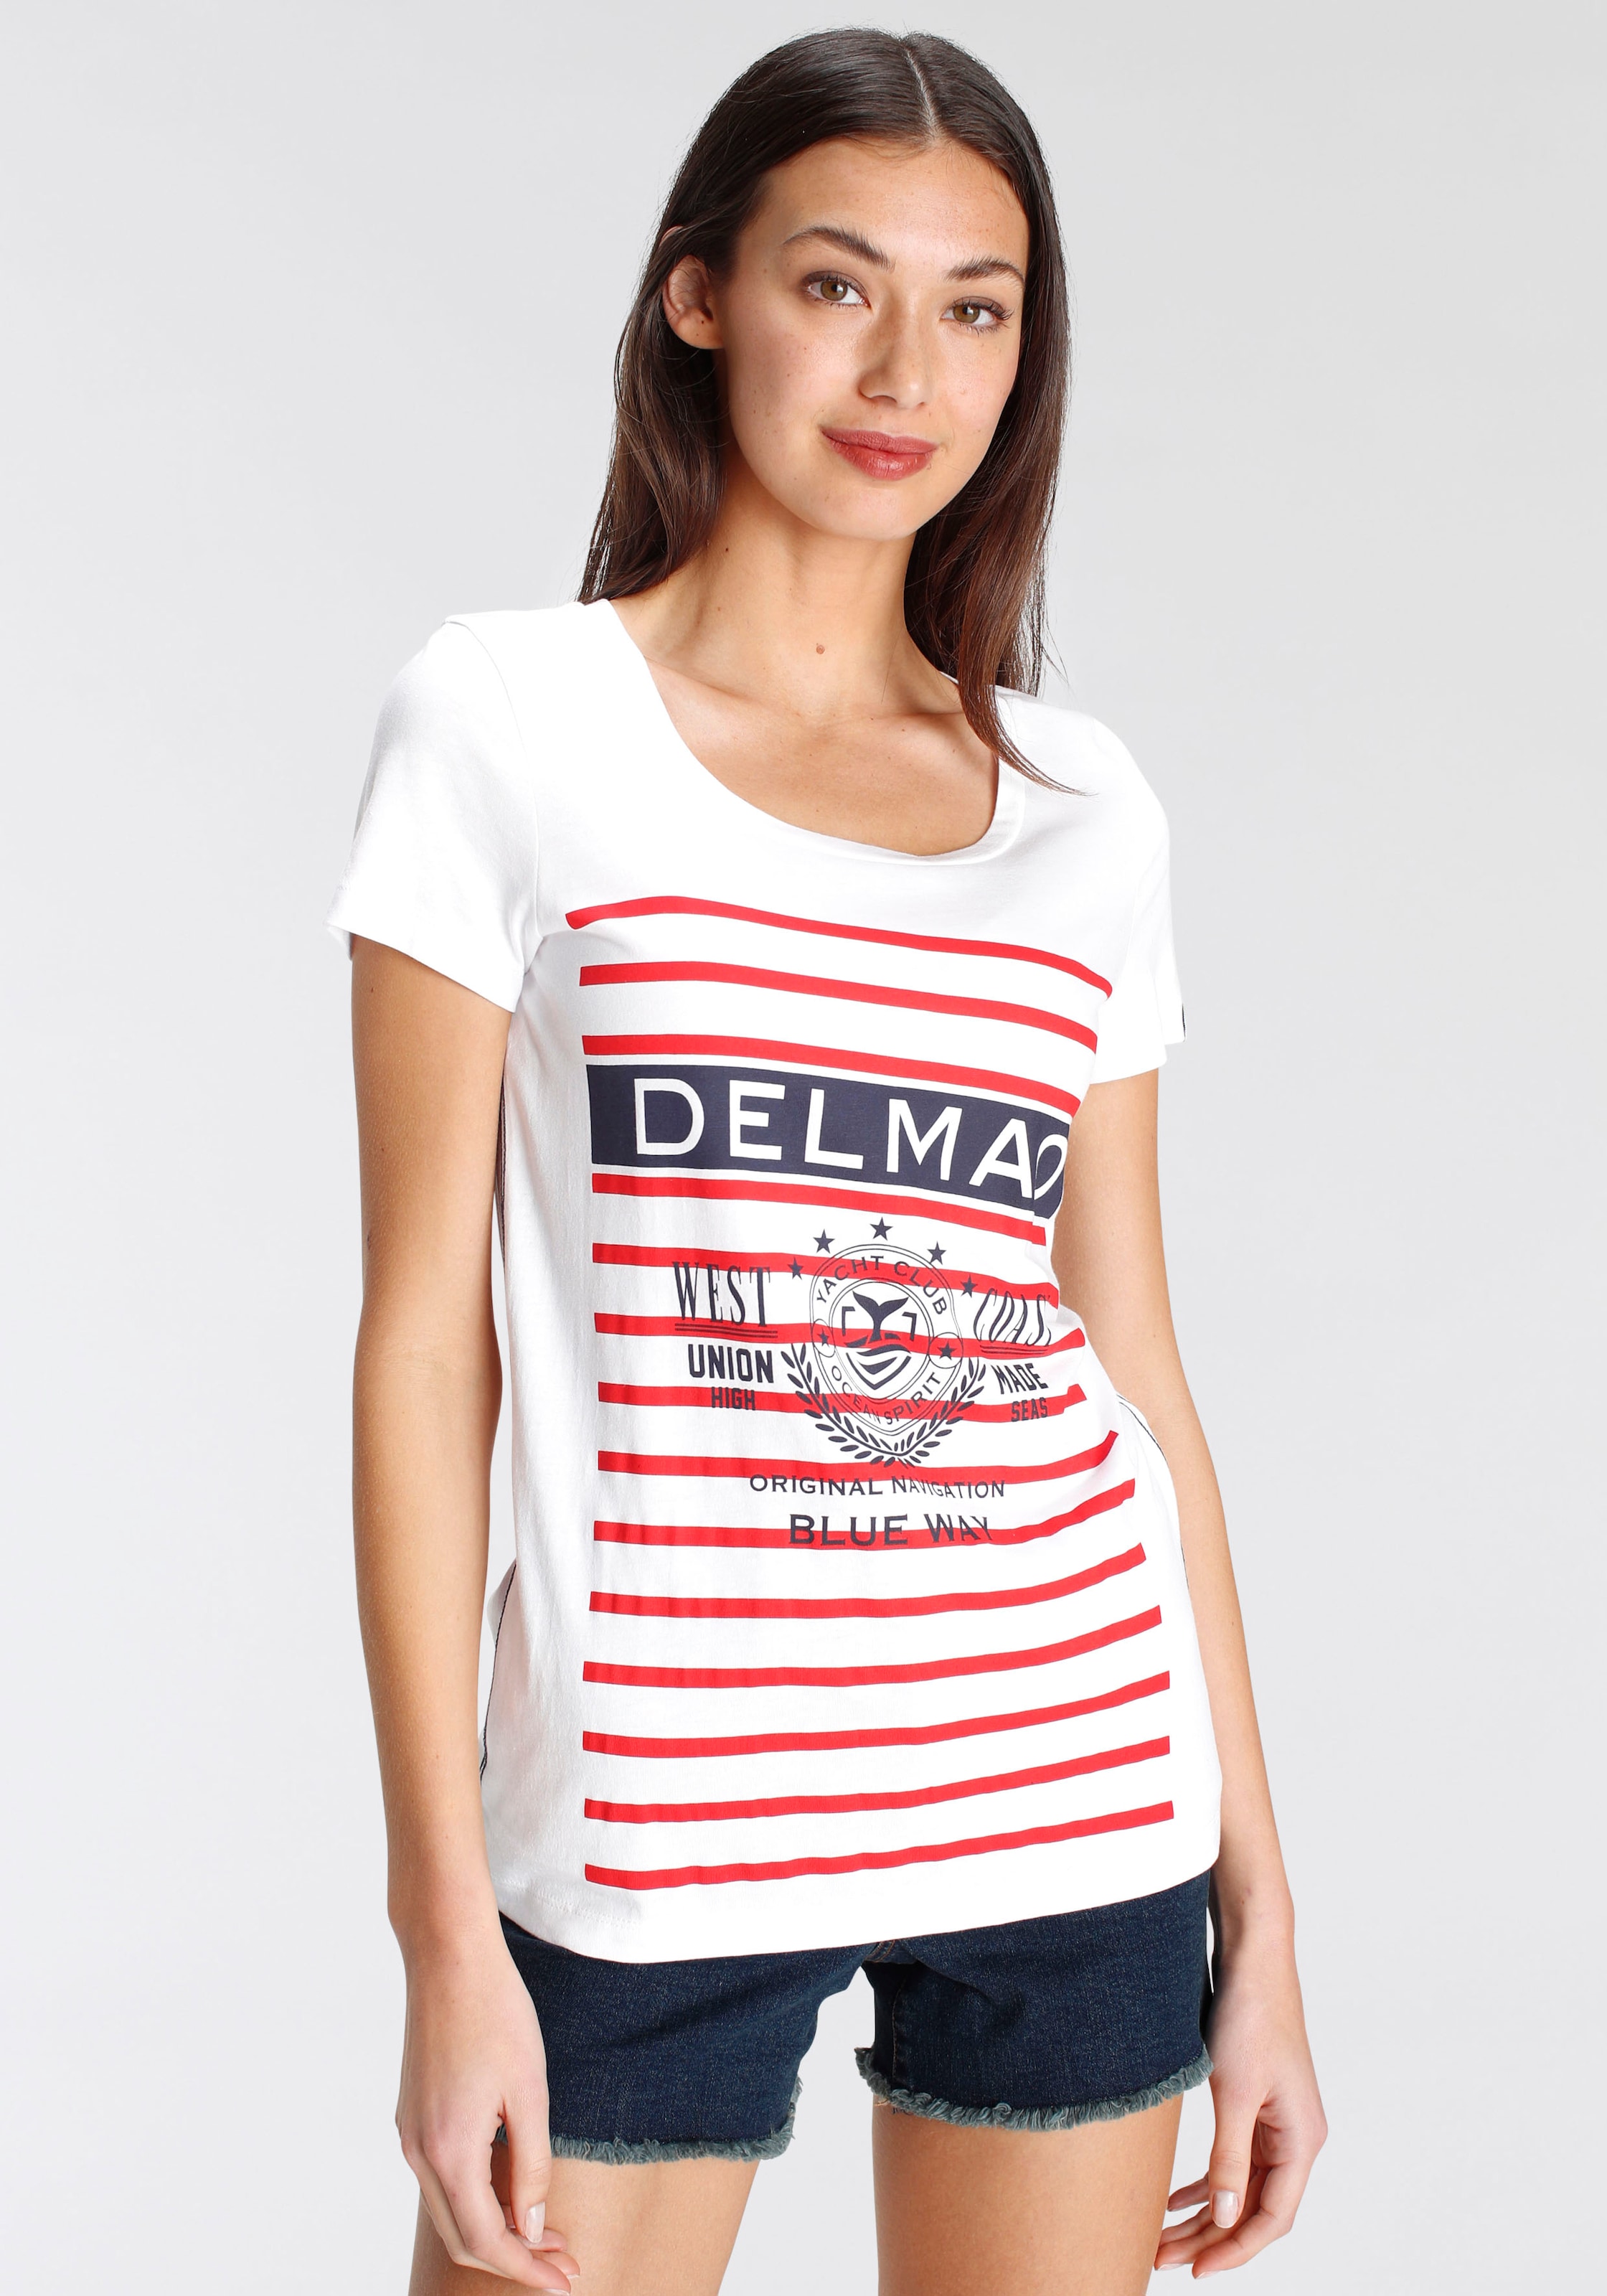 DELMAO Print-Shirt, mit grossen bei Marken-Logodruck MARKE! NEUE - sportivem shoppen Schweiz Jelmoli-Versand online